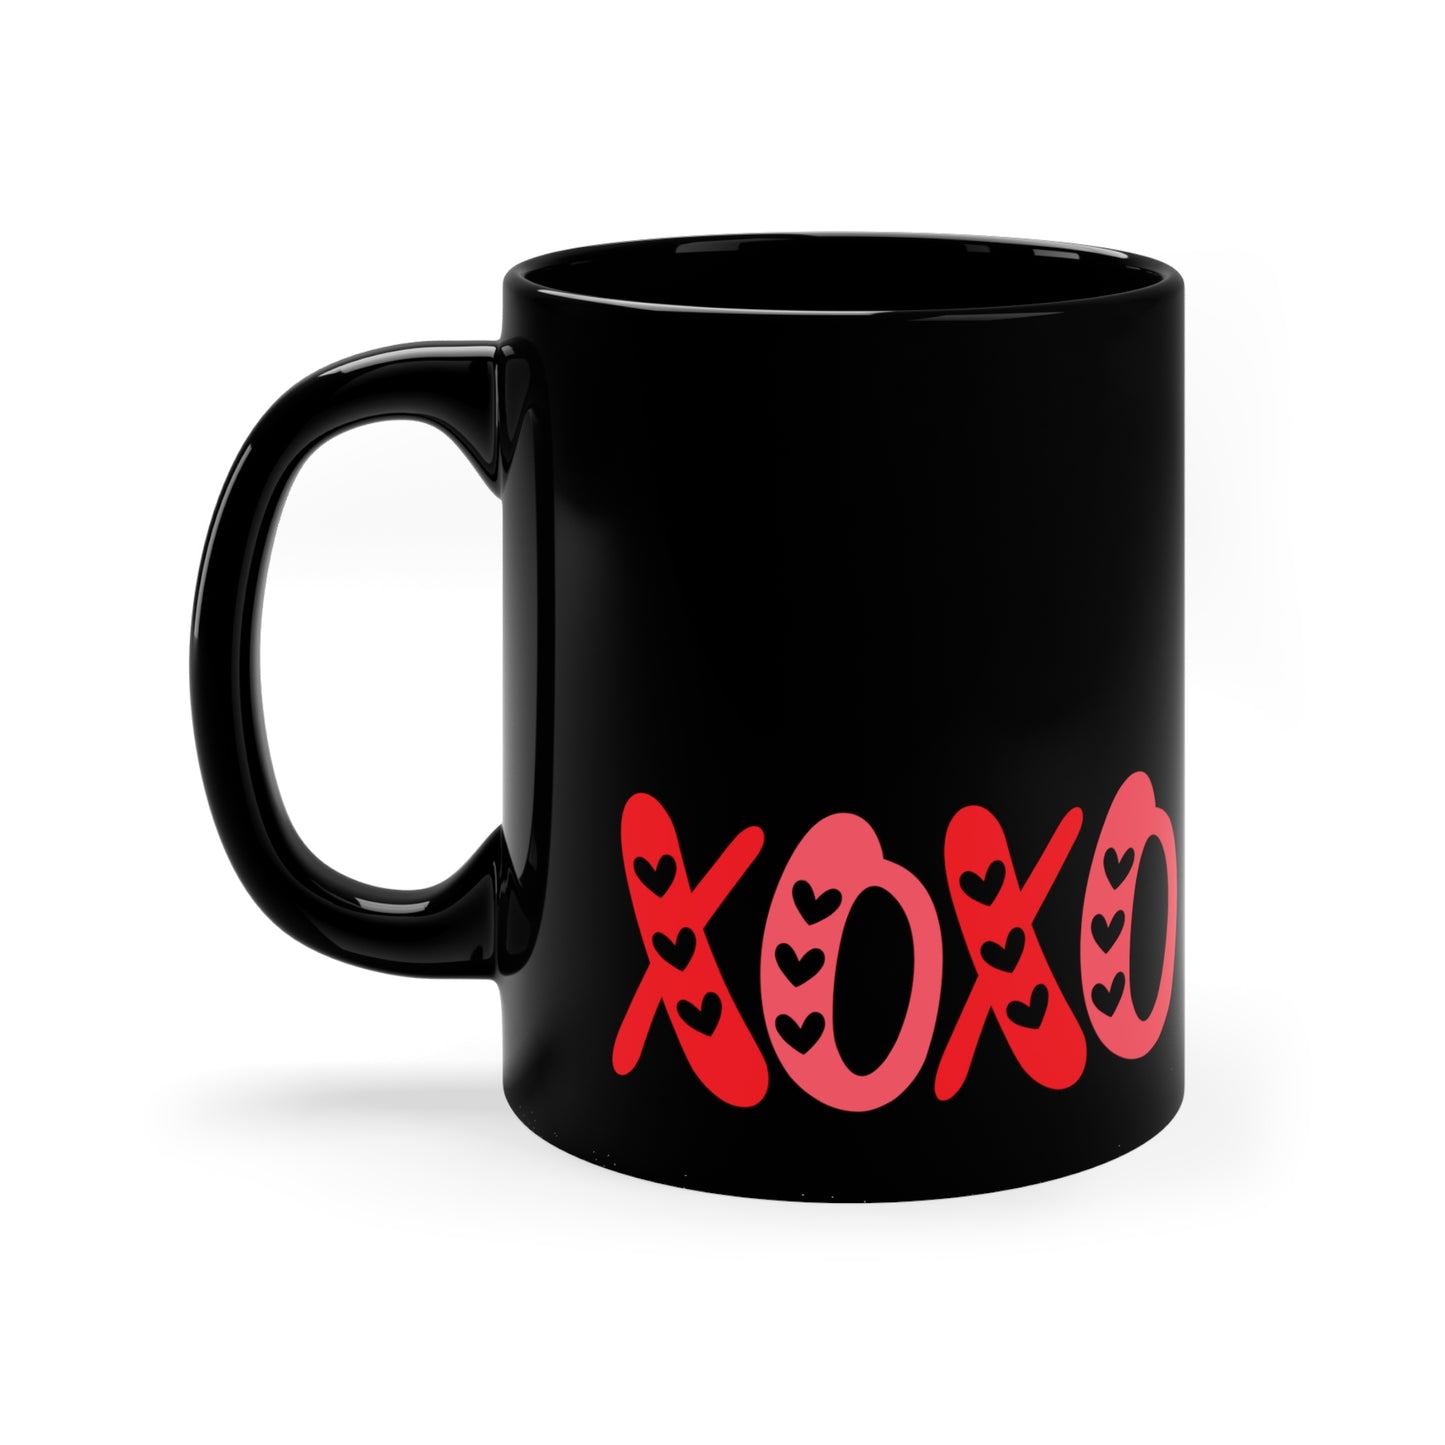 XOXO Valentines Day 11oz Black Mug